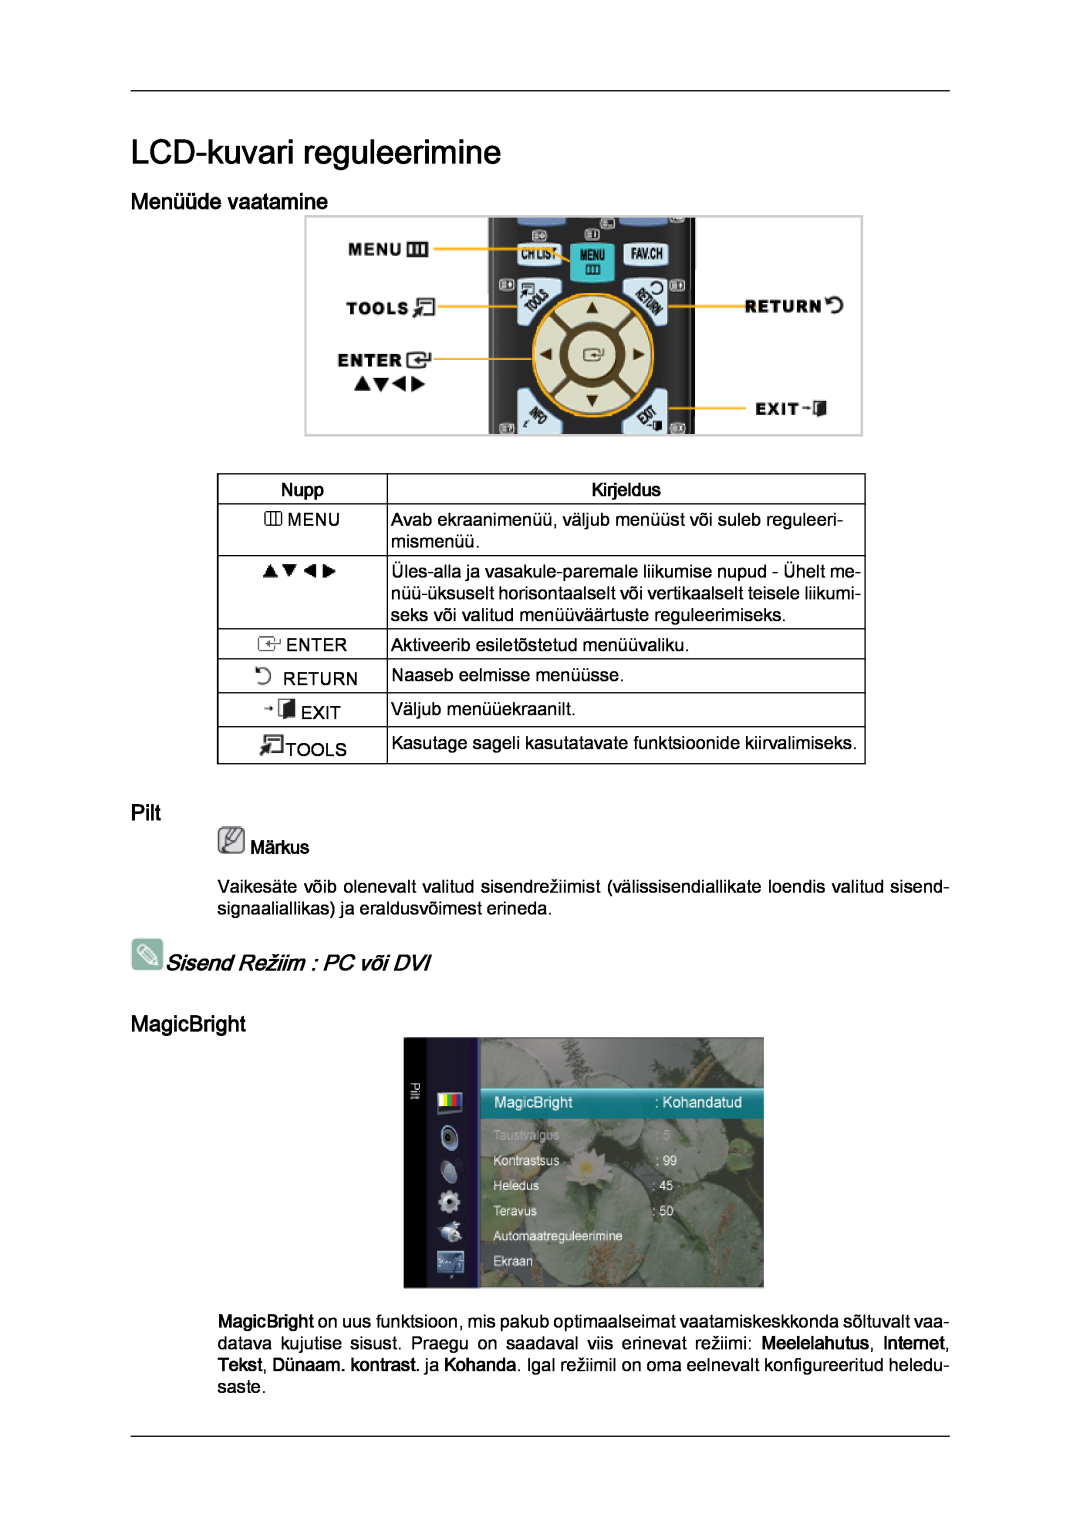 Samsung LS20TDDSUV/EN manual LCD-kuvari reguleerimine, Menüüde vaatamine, Pilt, Sisend Režiim PC või DVI, MagicBright, Nupp 